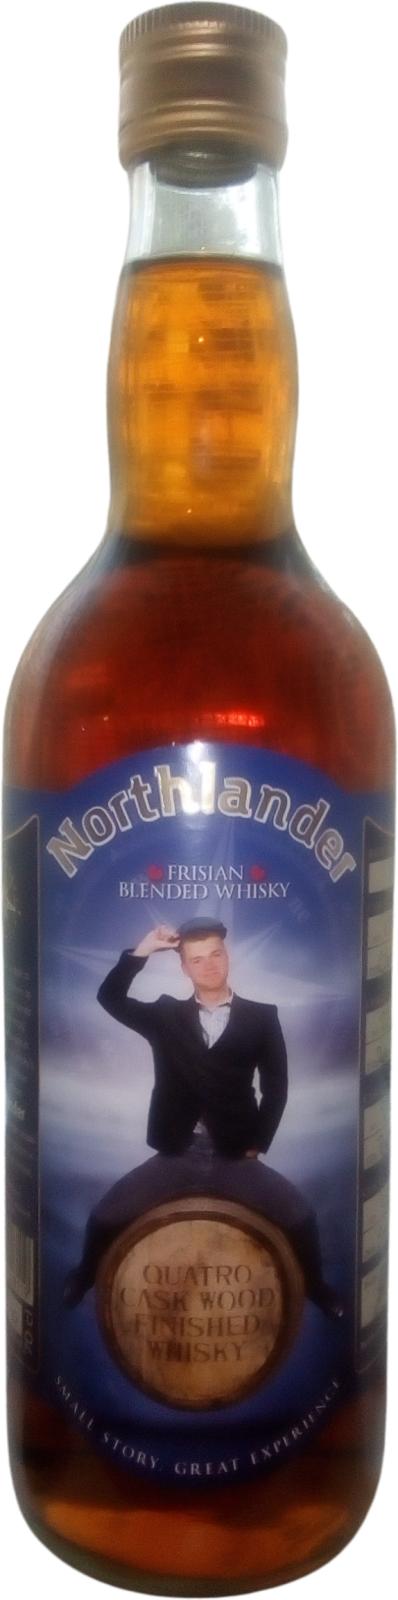 Northlander Frisian Blended Whisky